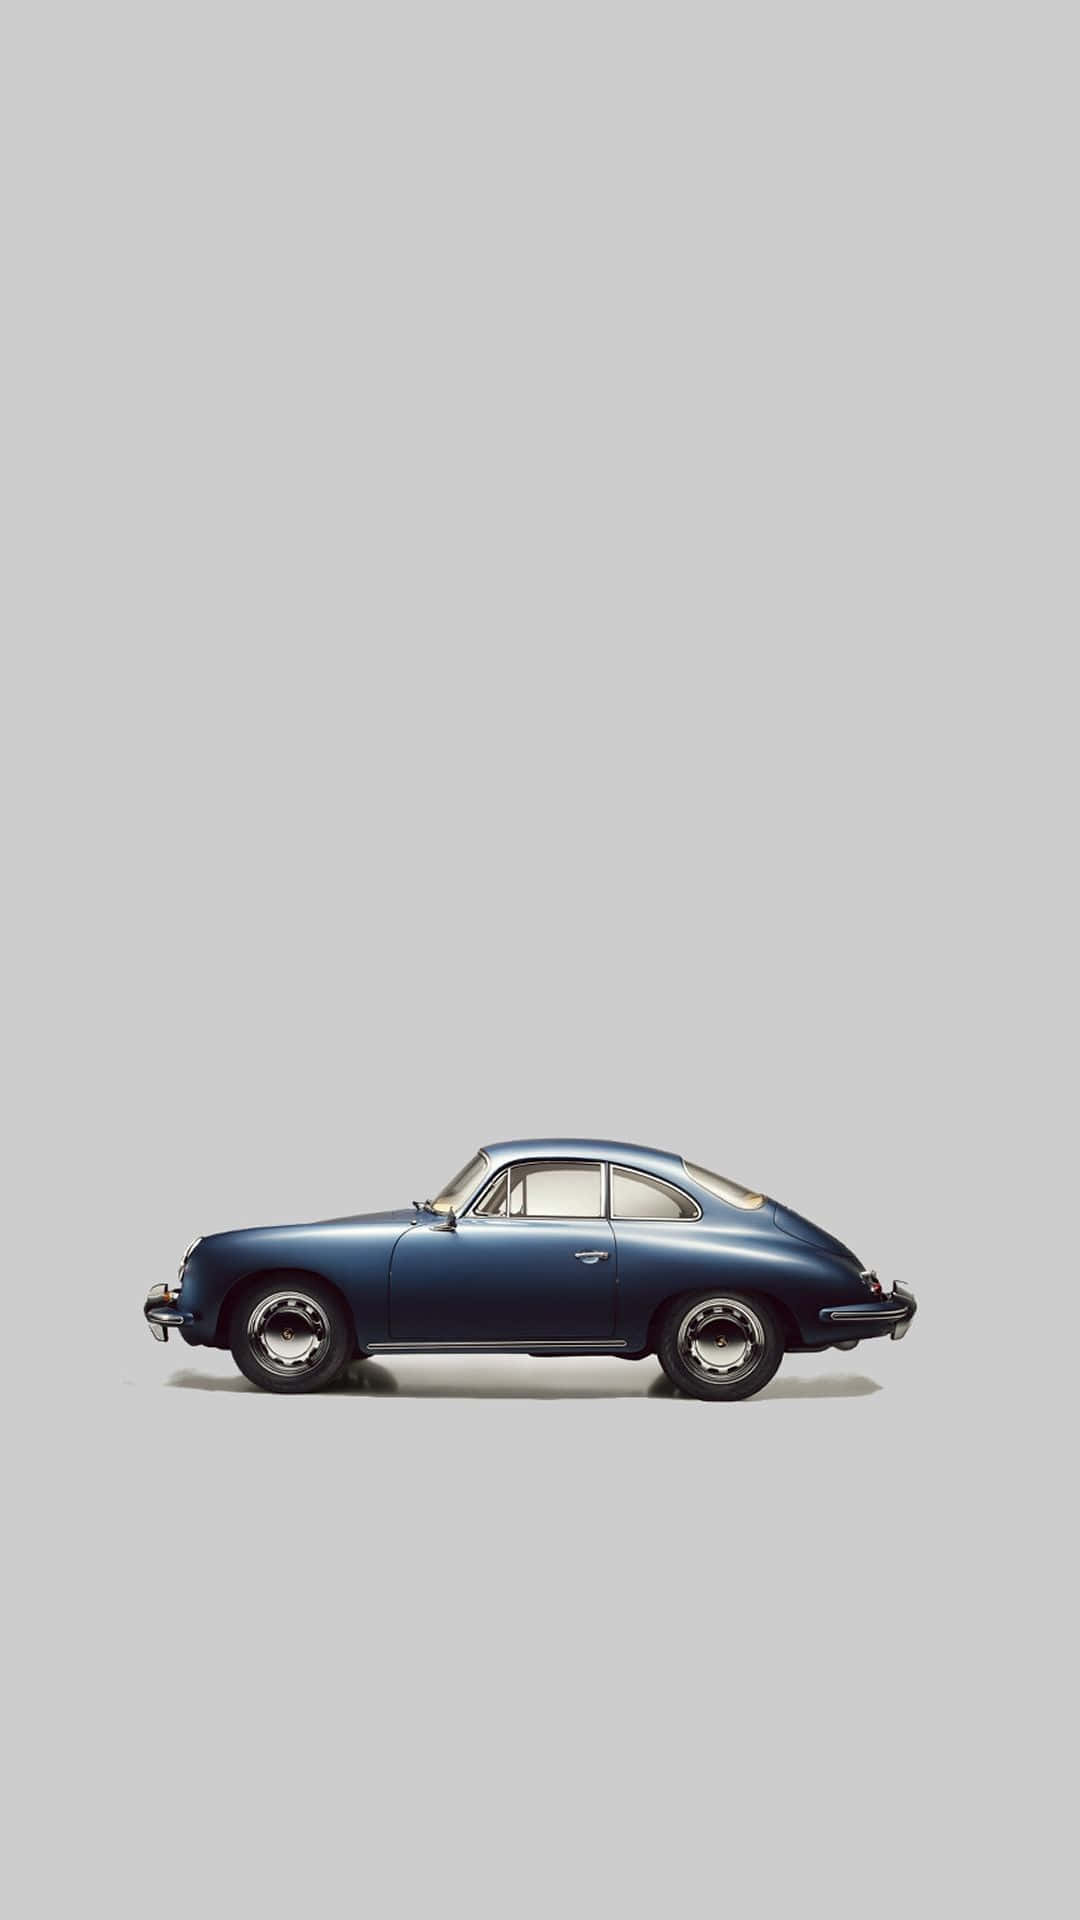 Et blåt køretøj er vist mod en grå baggrund. Wallpaper